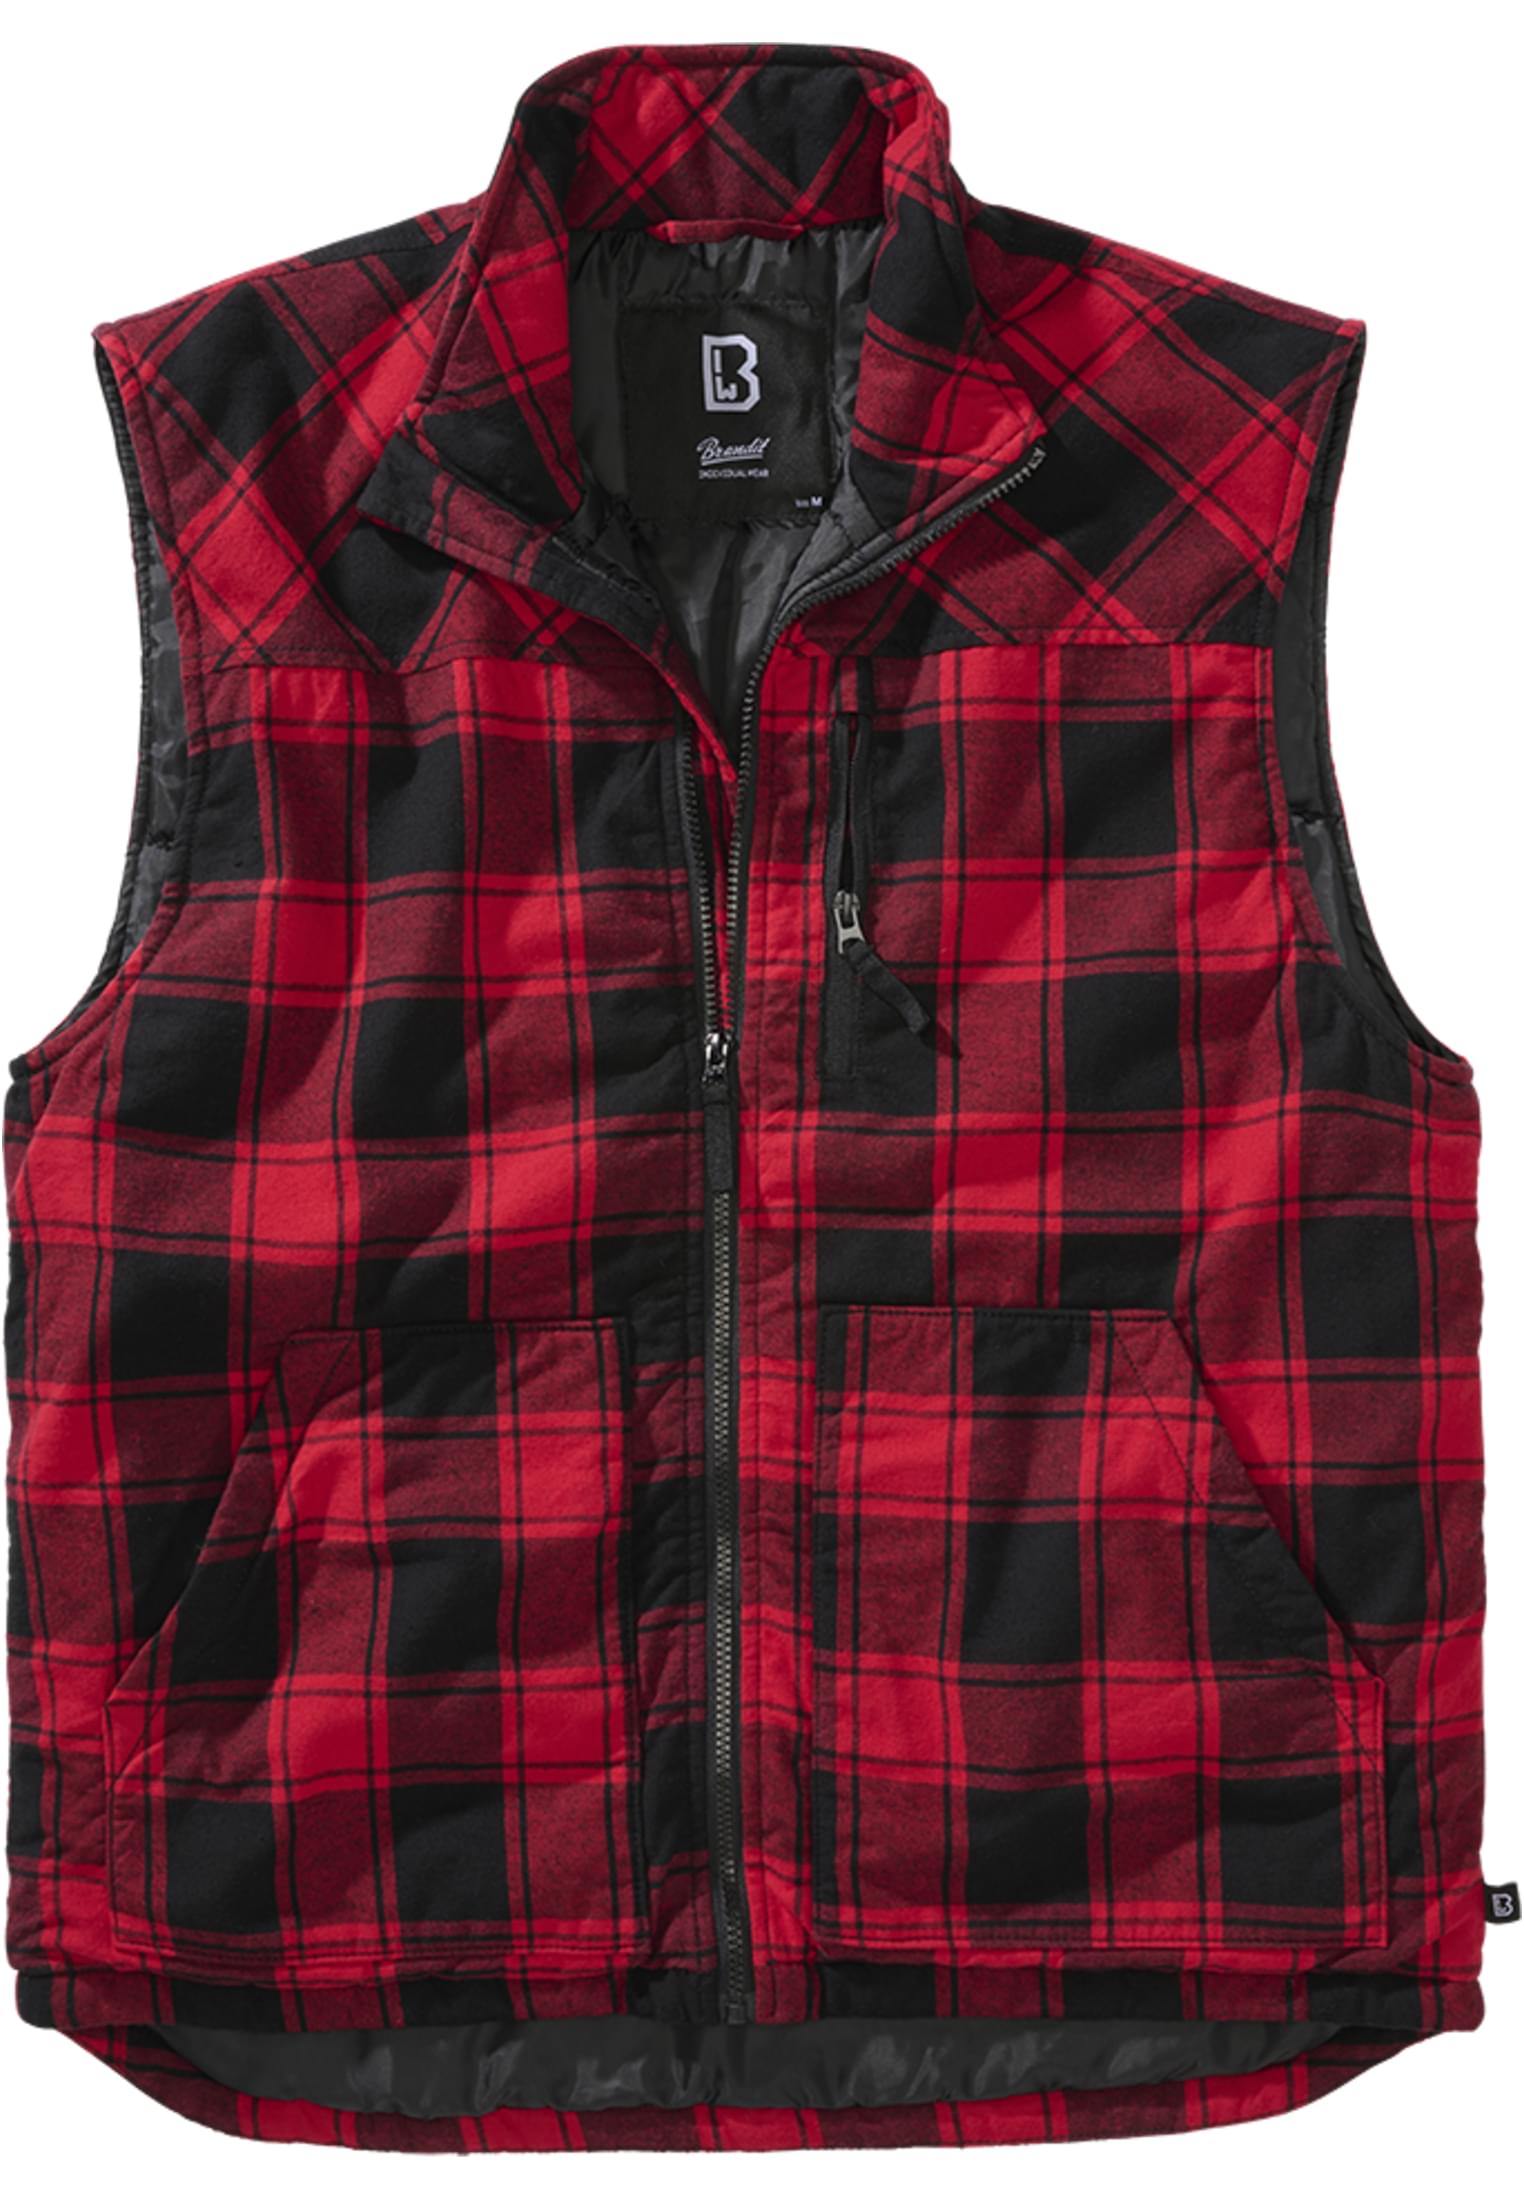 Wooden vest red/black